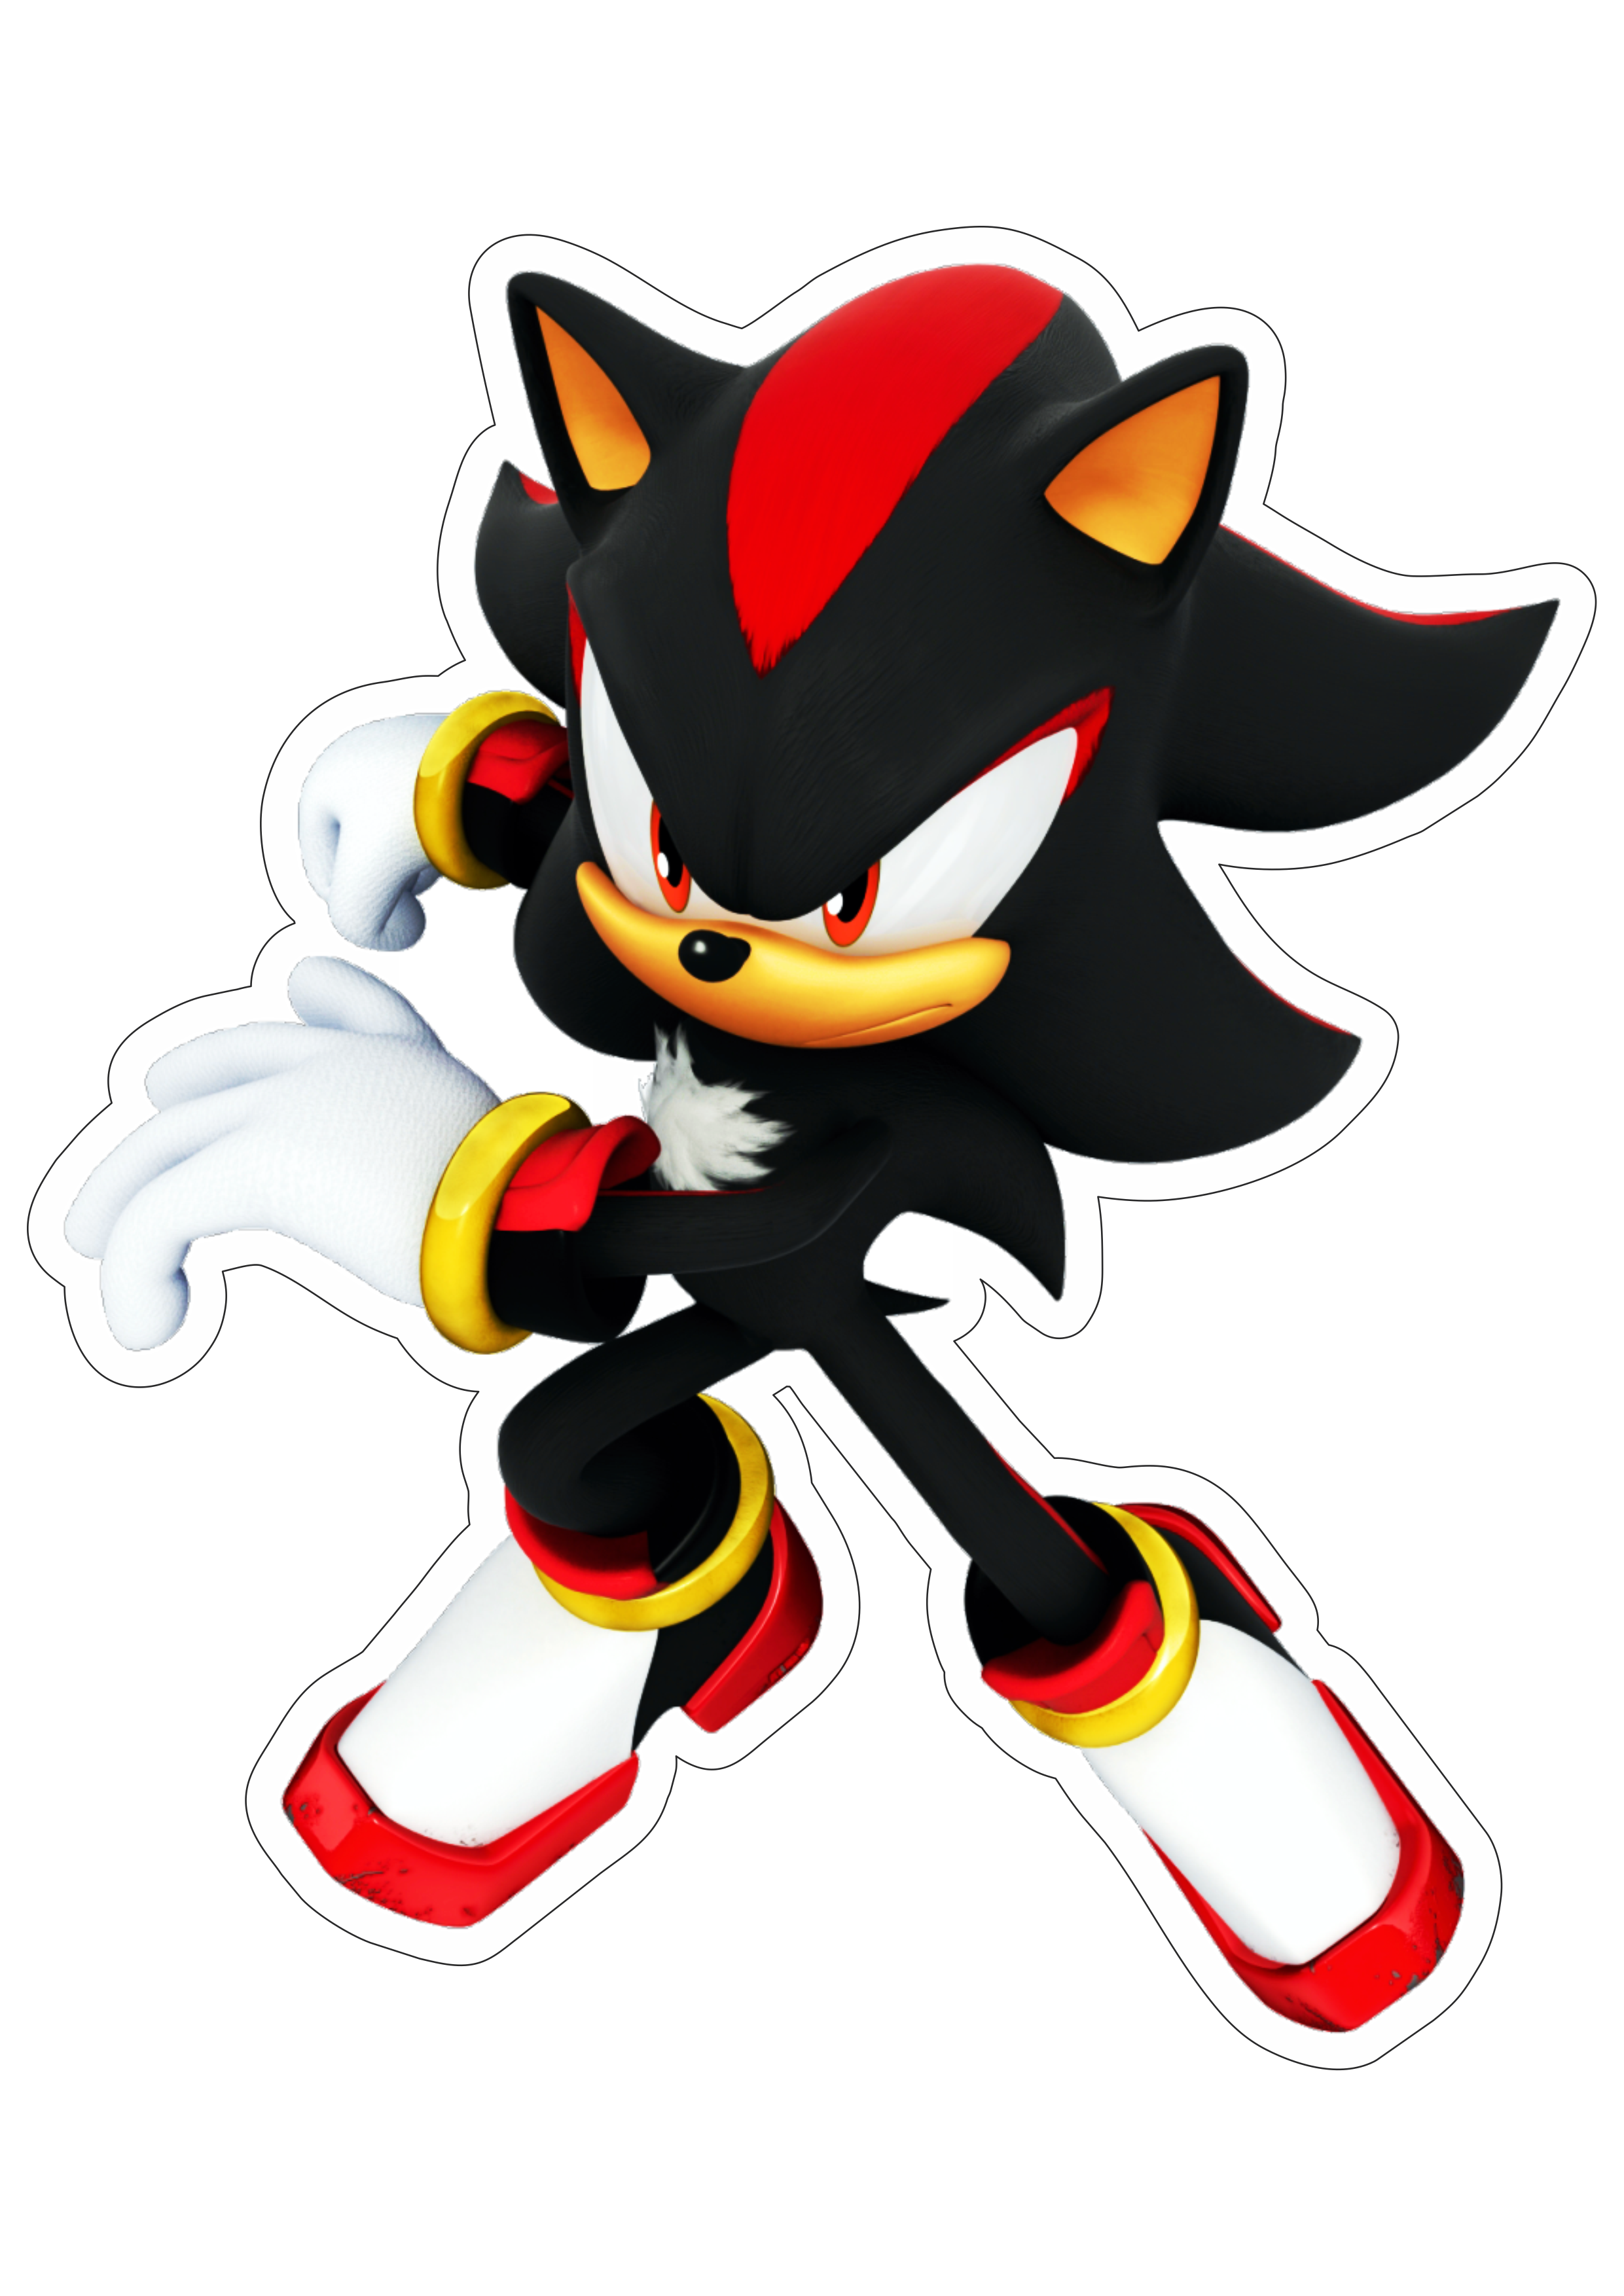 Shadow Sonic the hedgehog personagem de game imagem com fundo transparente e contorno png